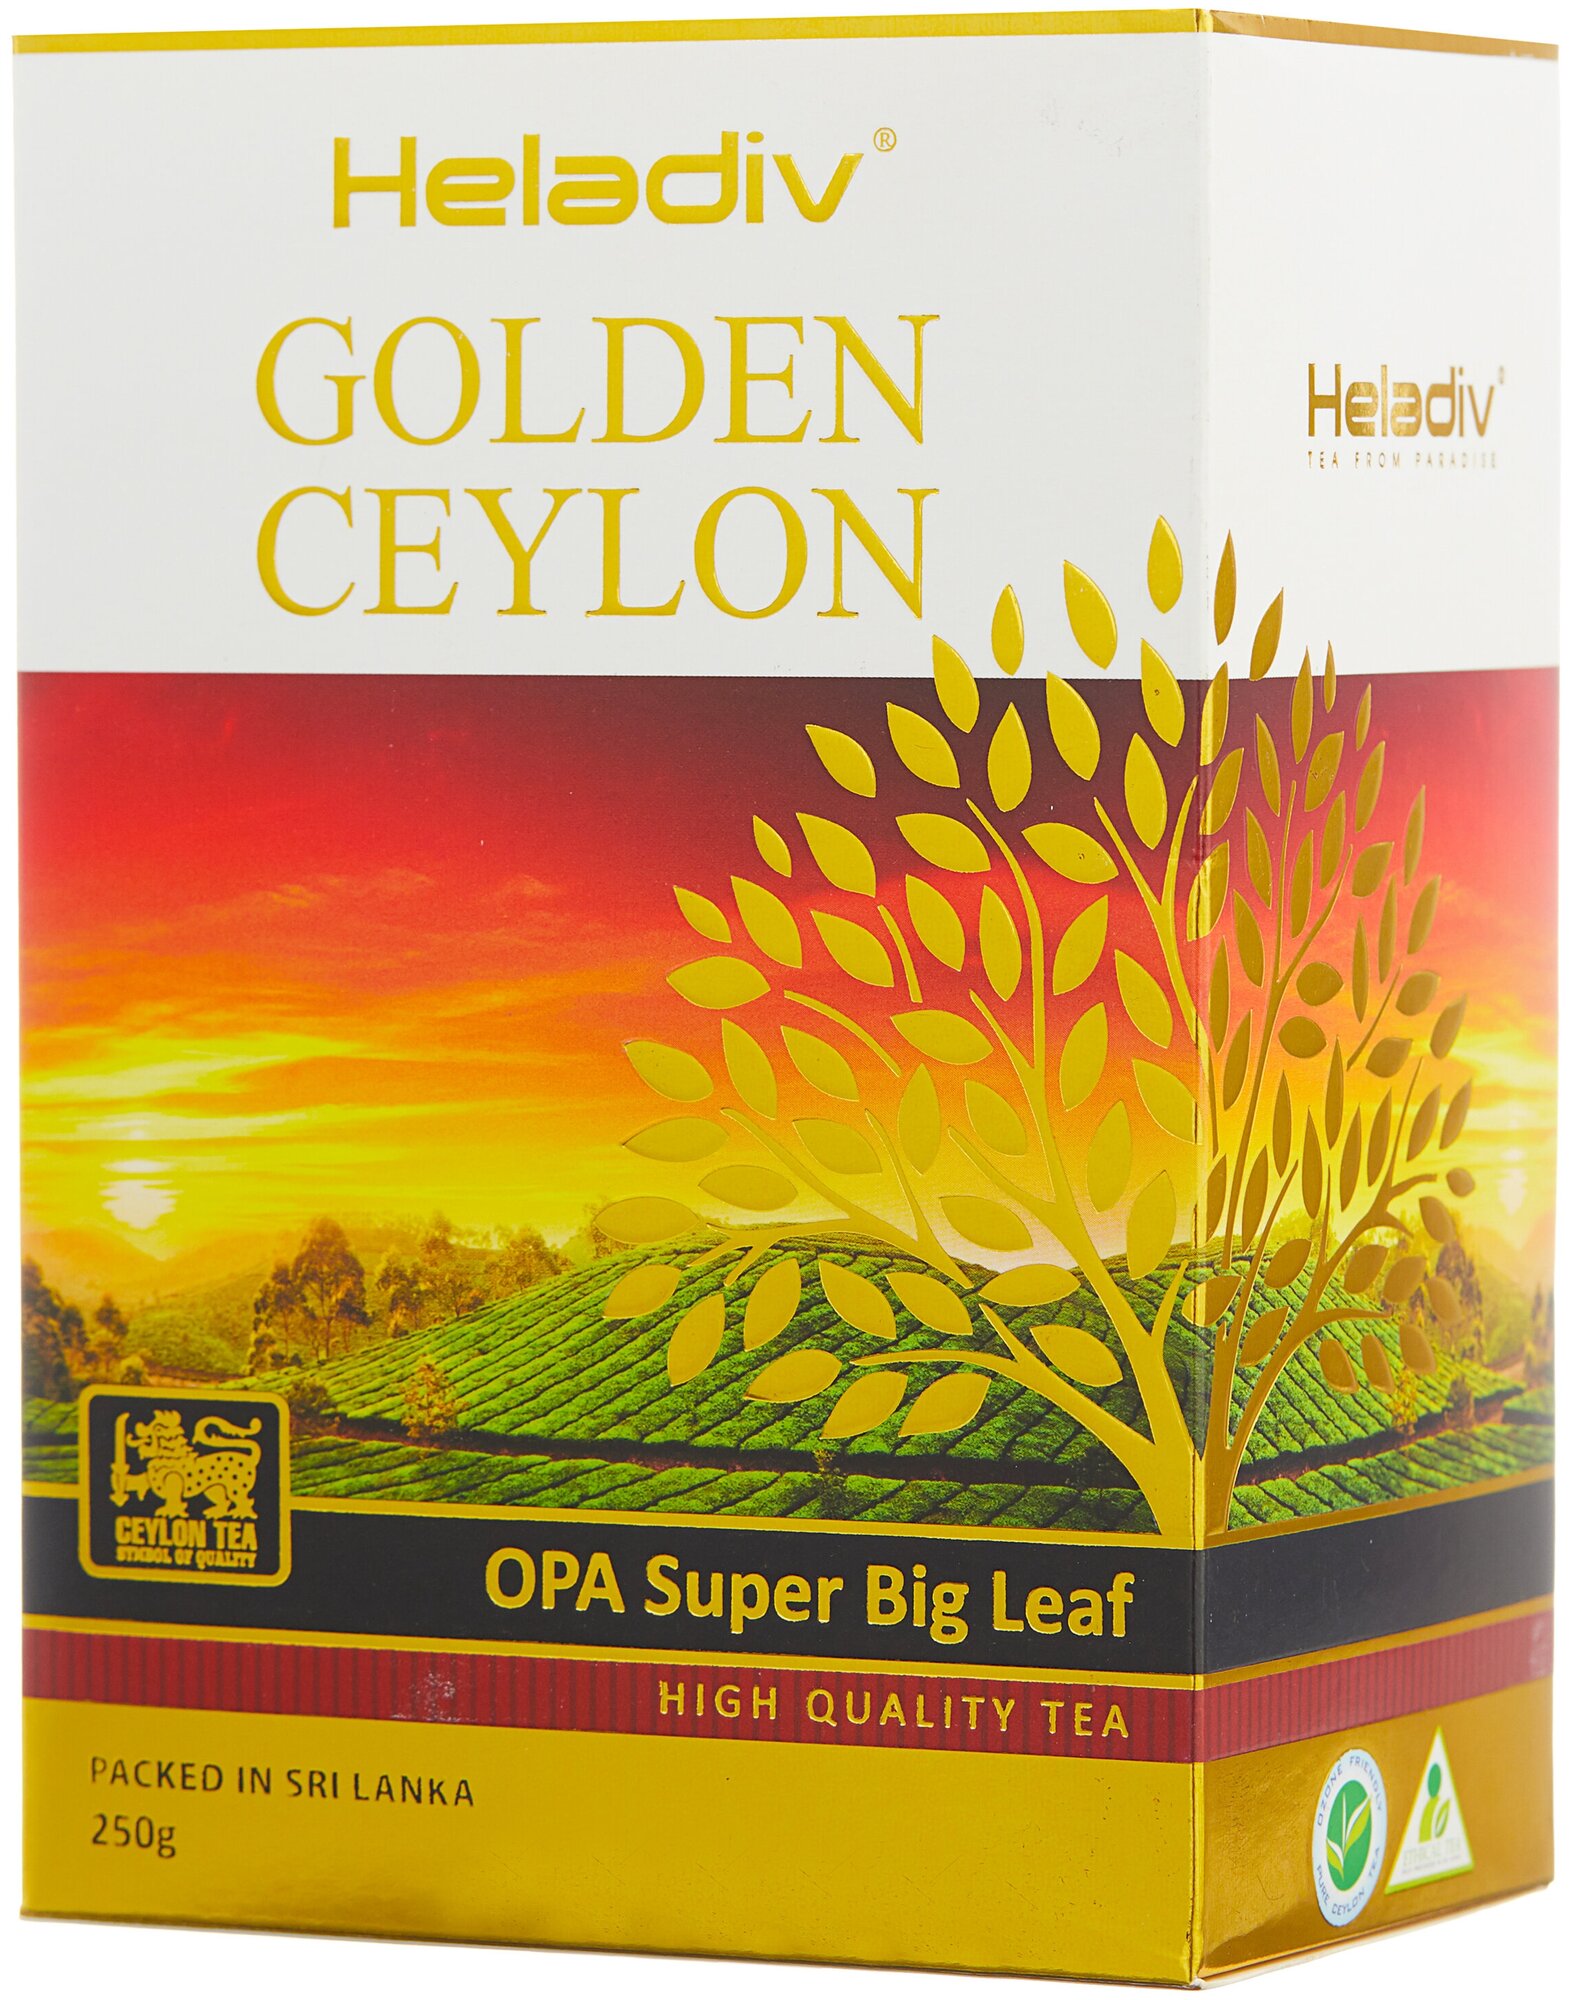 Heladiv Golden Ceylon Opa Super Big Leaf черный листовой чай, 250 г